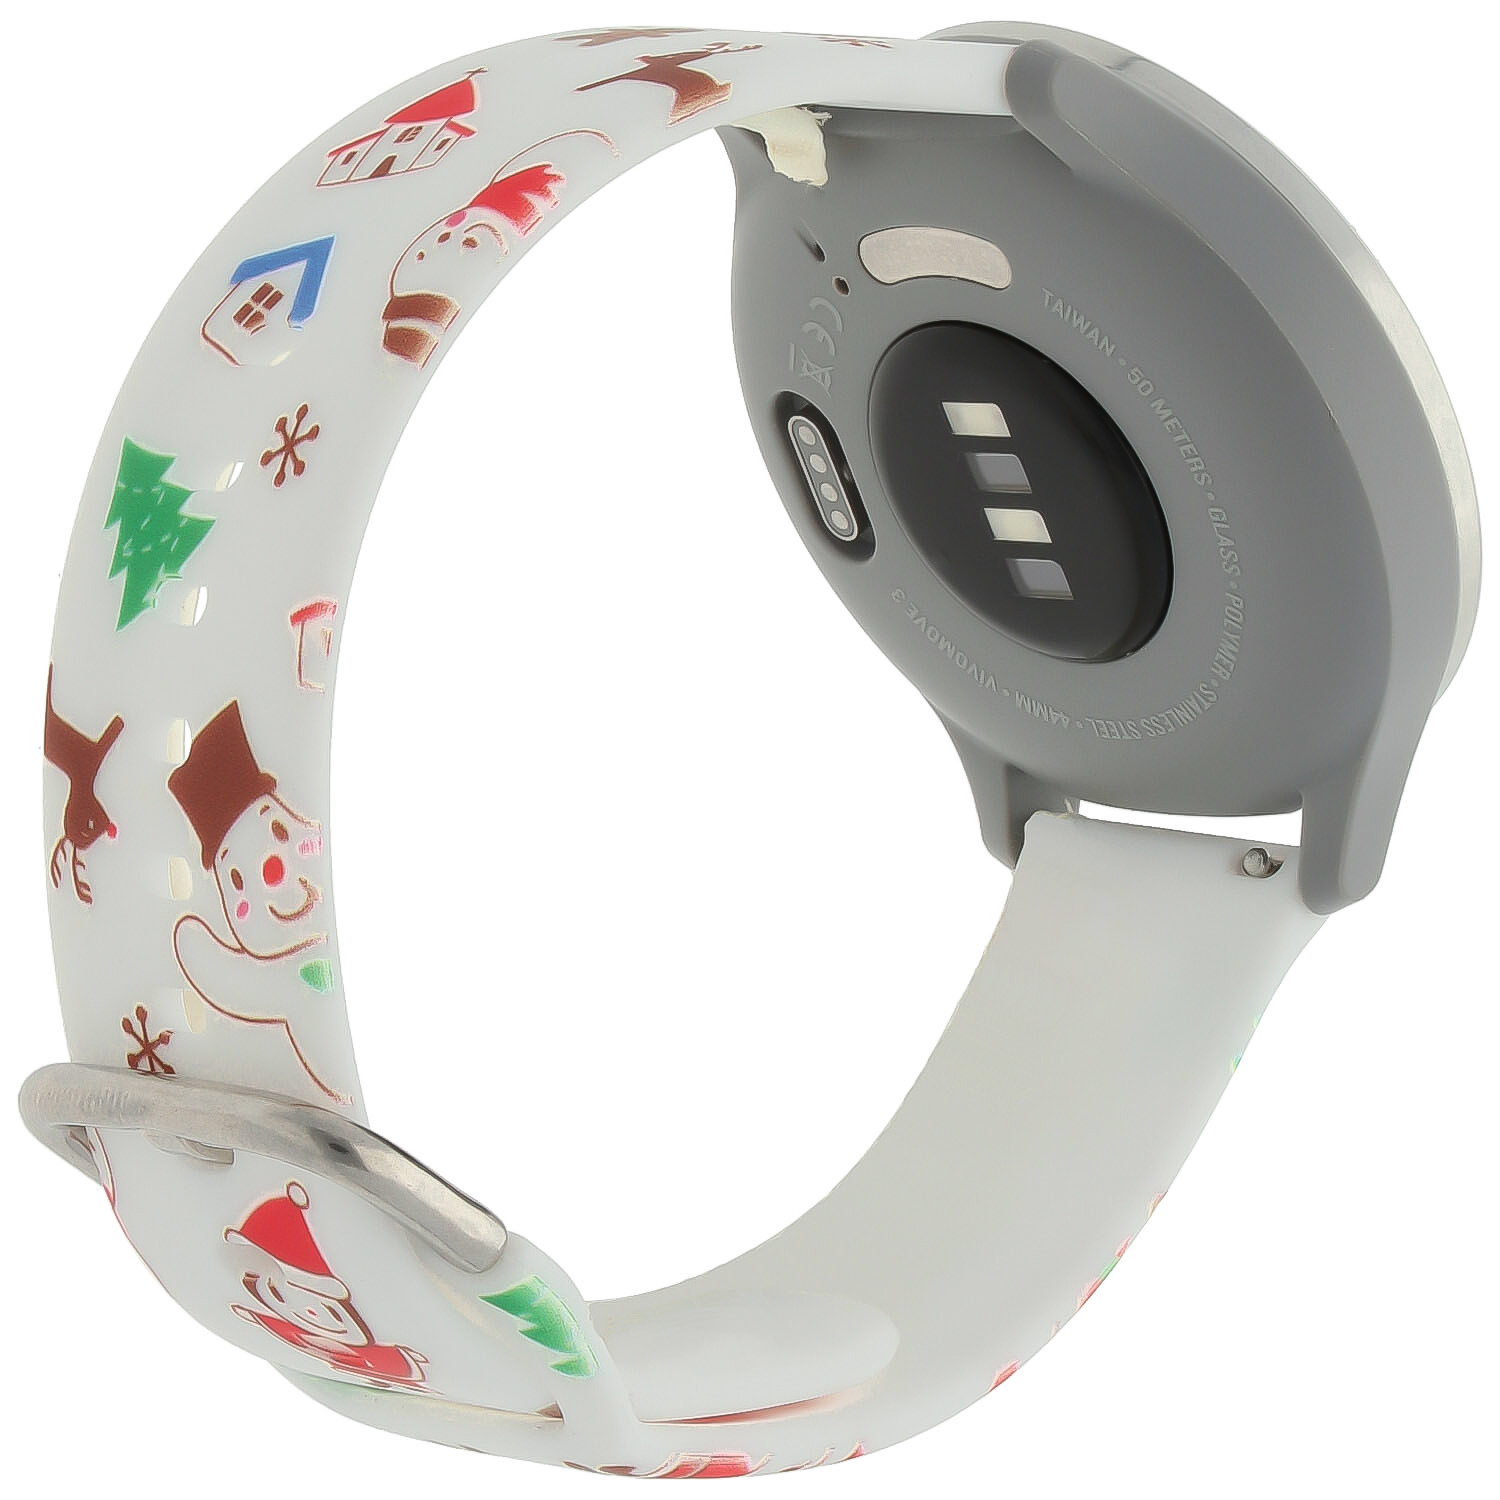 Huawei Watch druck Sportarmband - Weihnachten Schneemann weiß